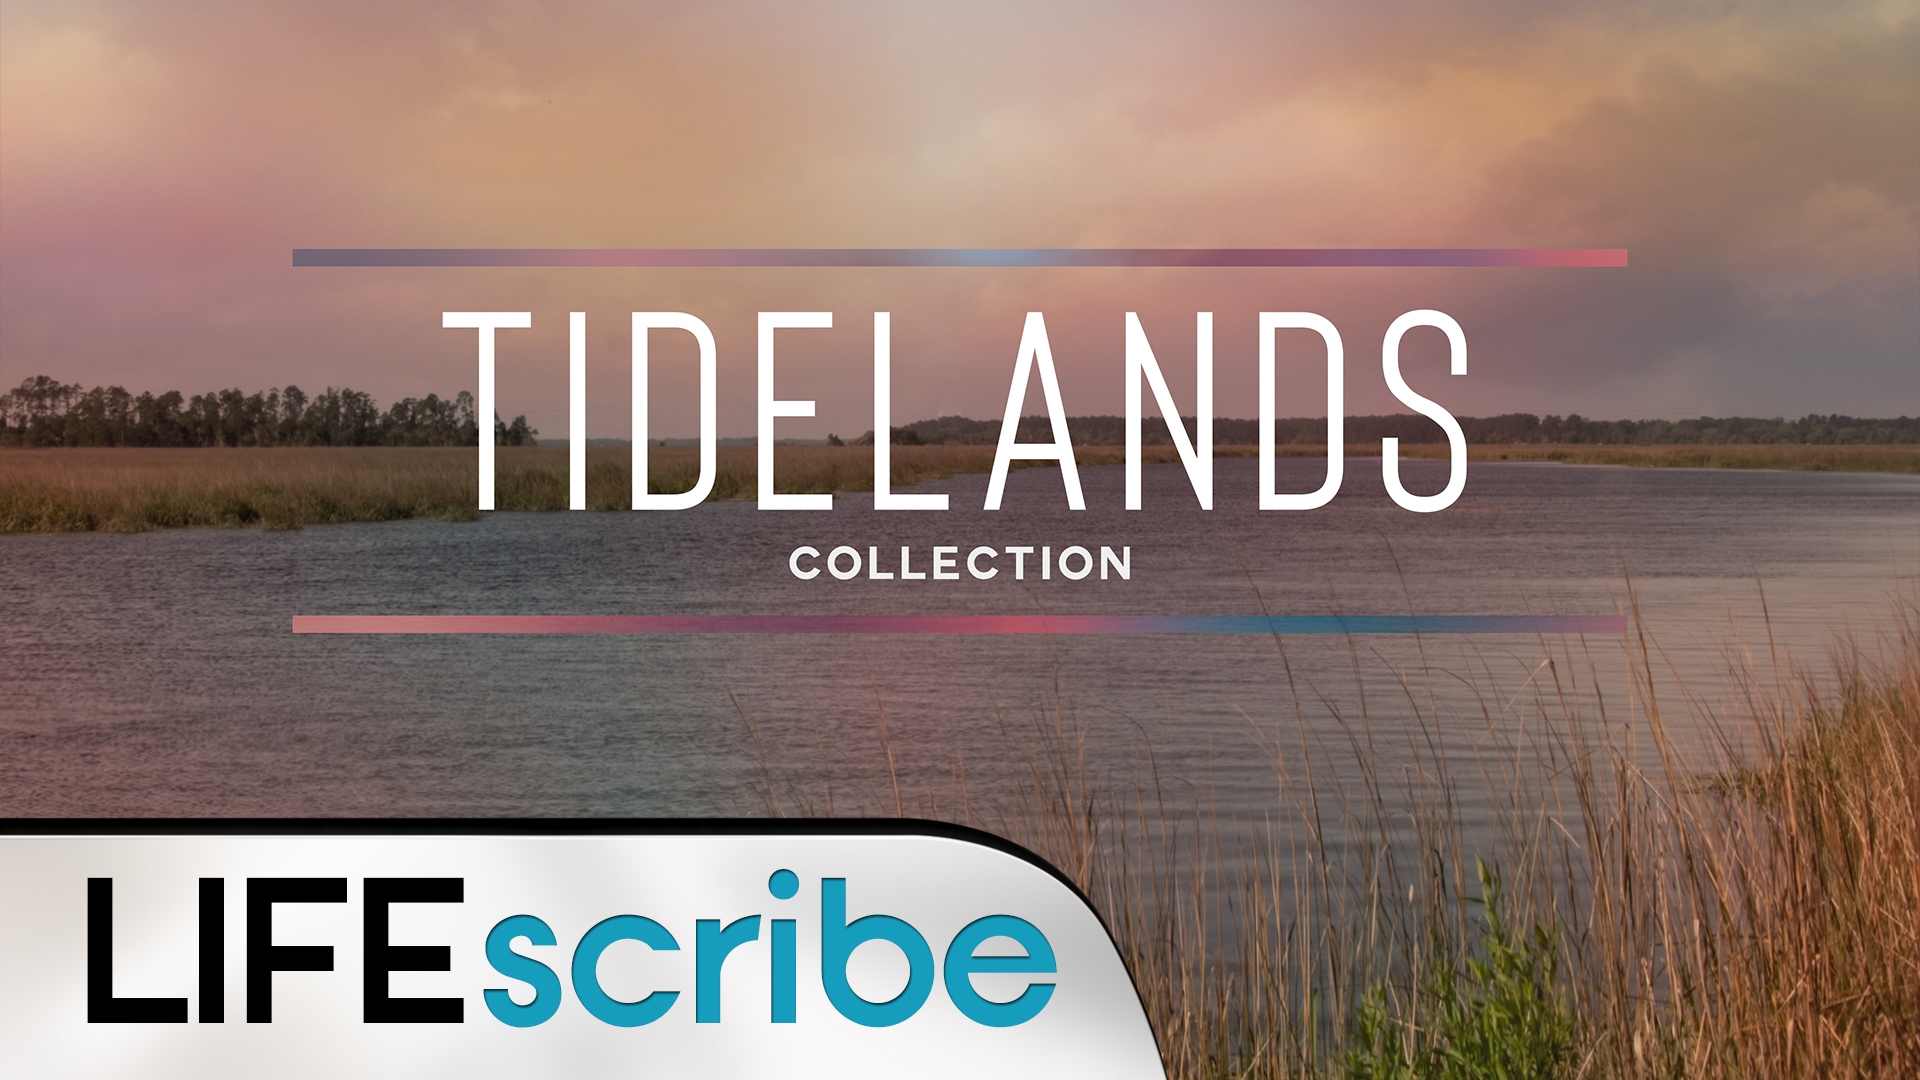 Tidelands Collection